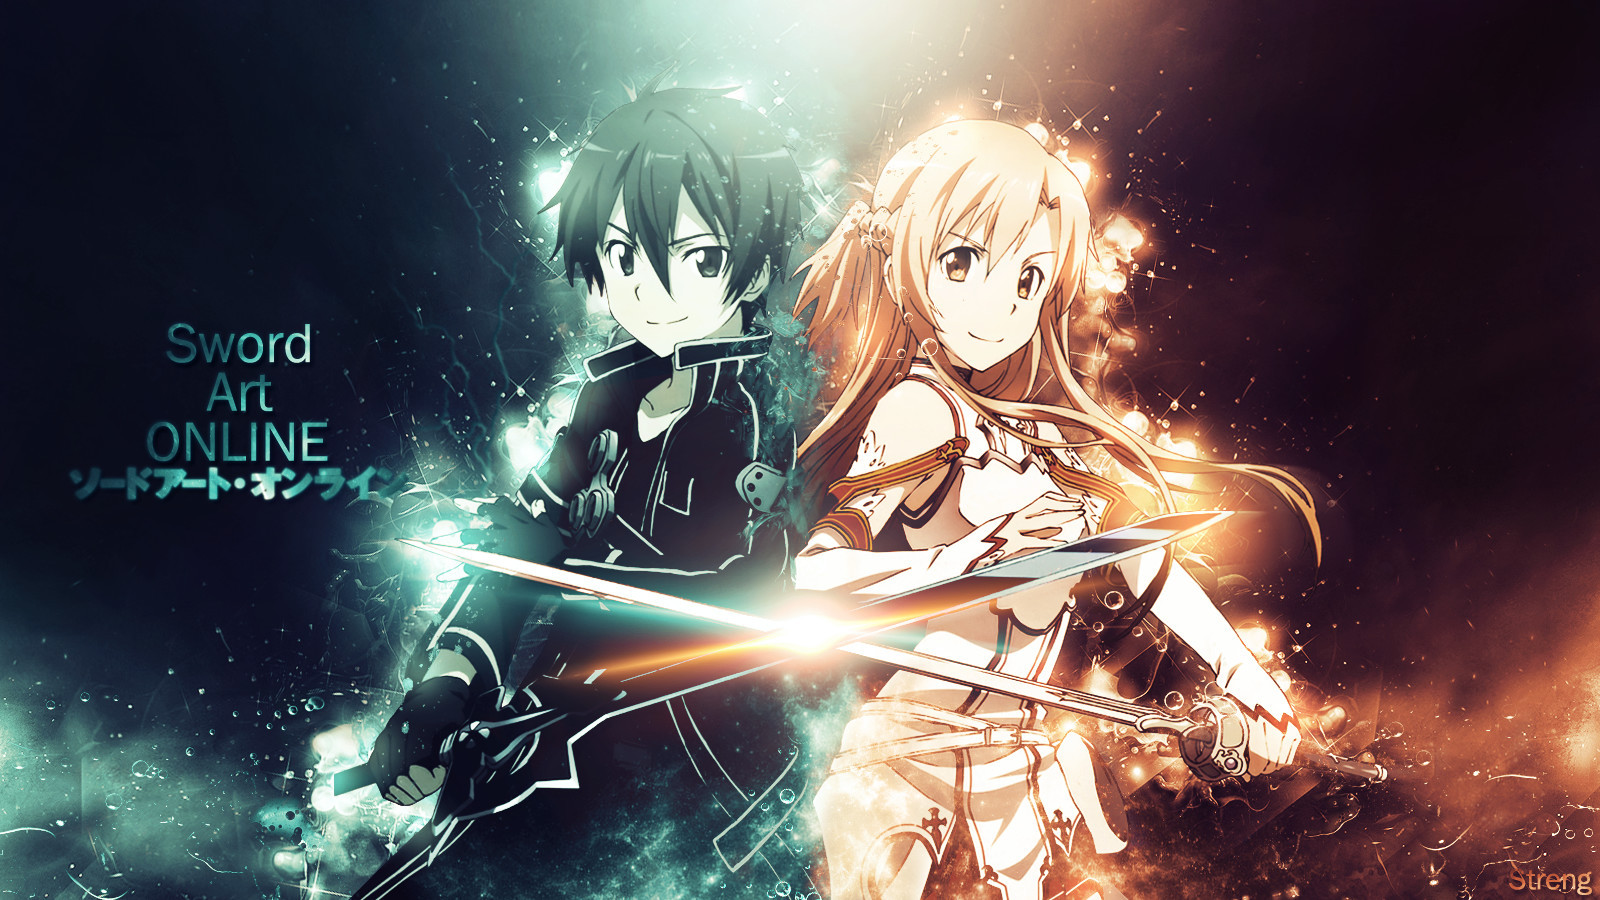 sword art online wallpaper by strengxd fan art manga anime digital 1600x900